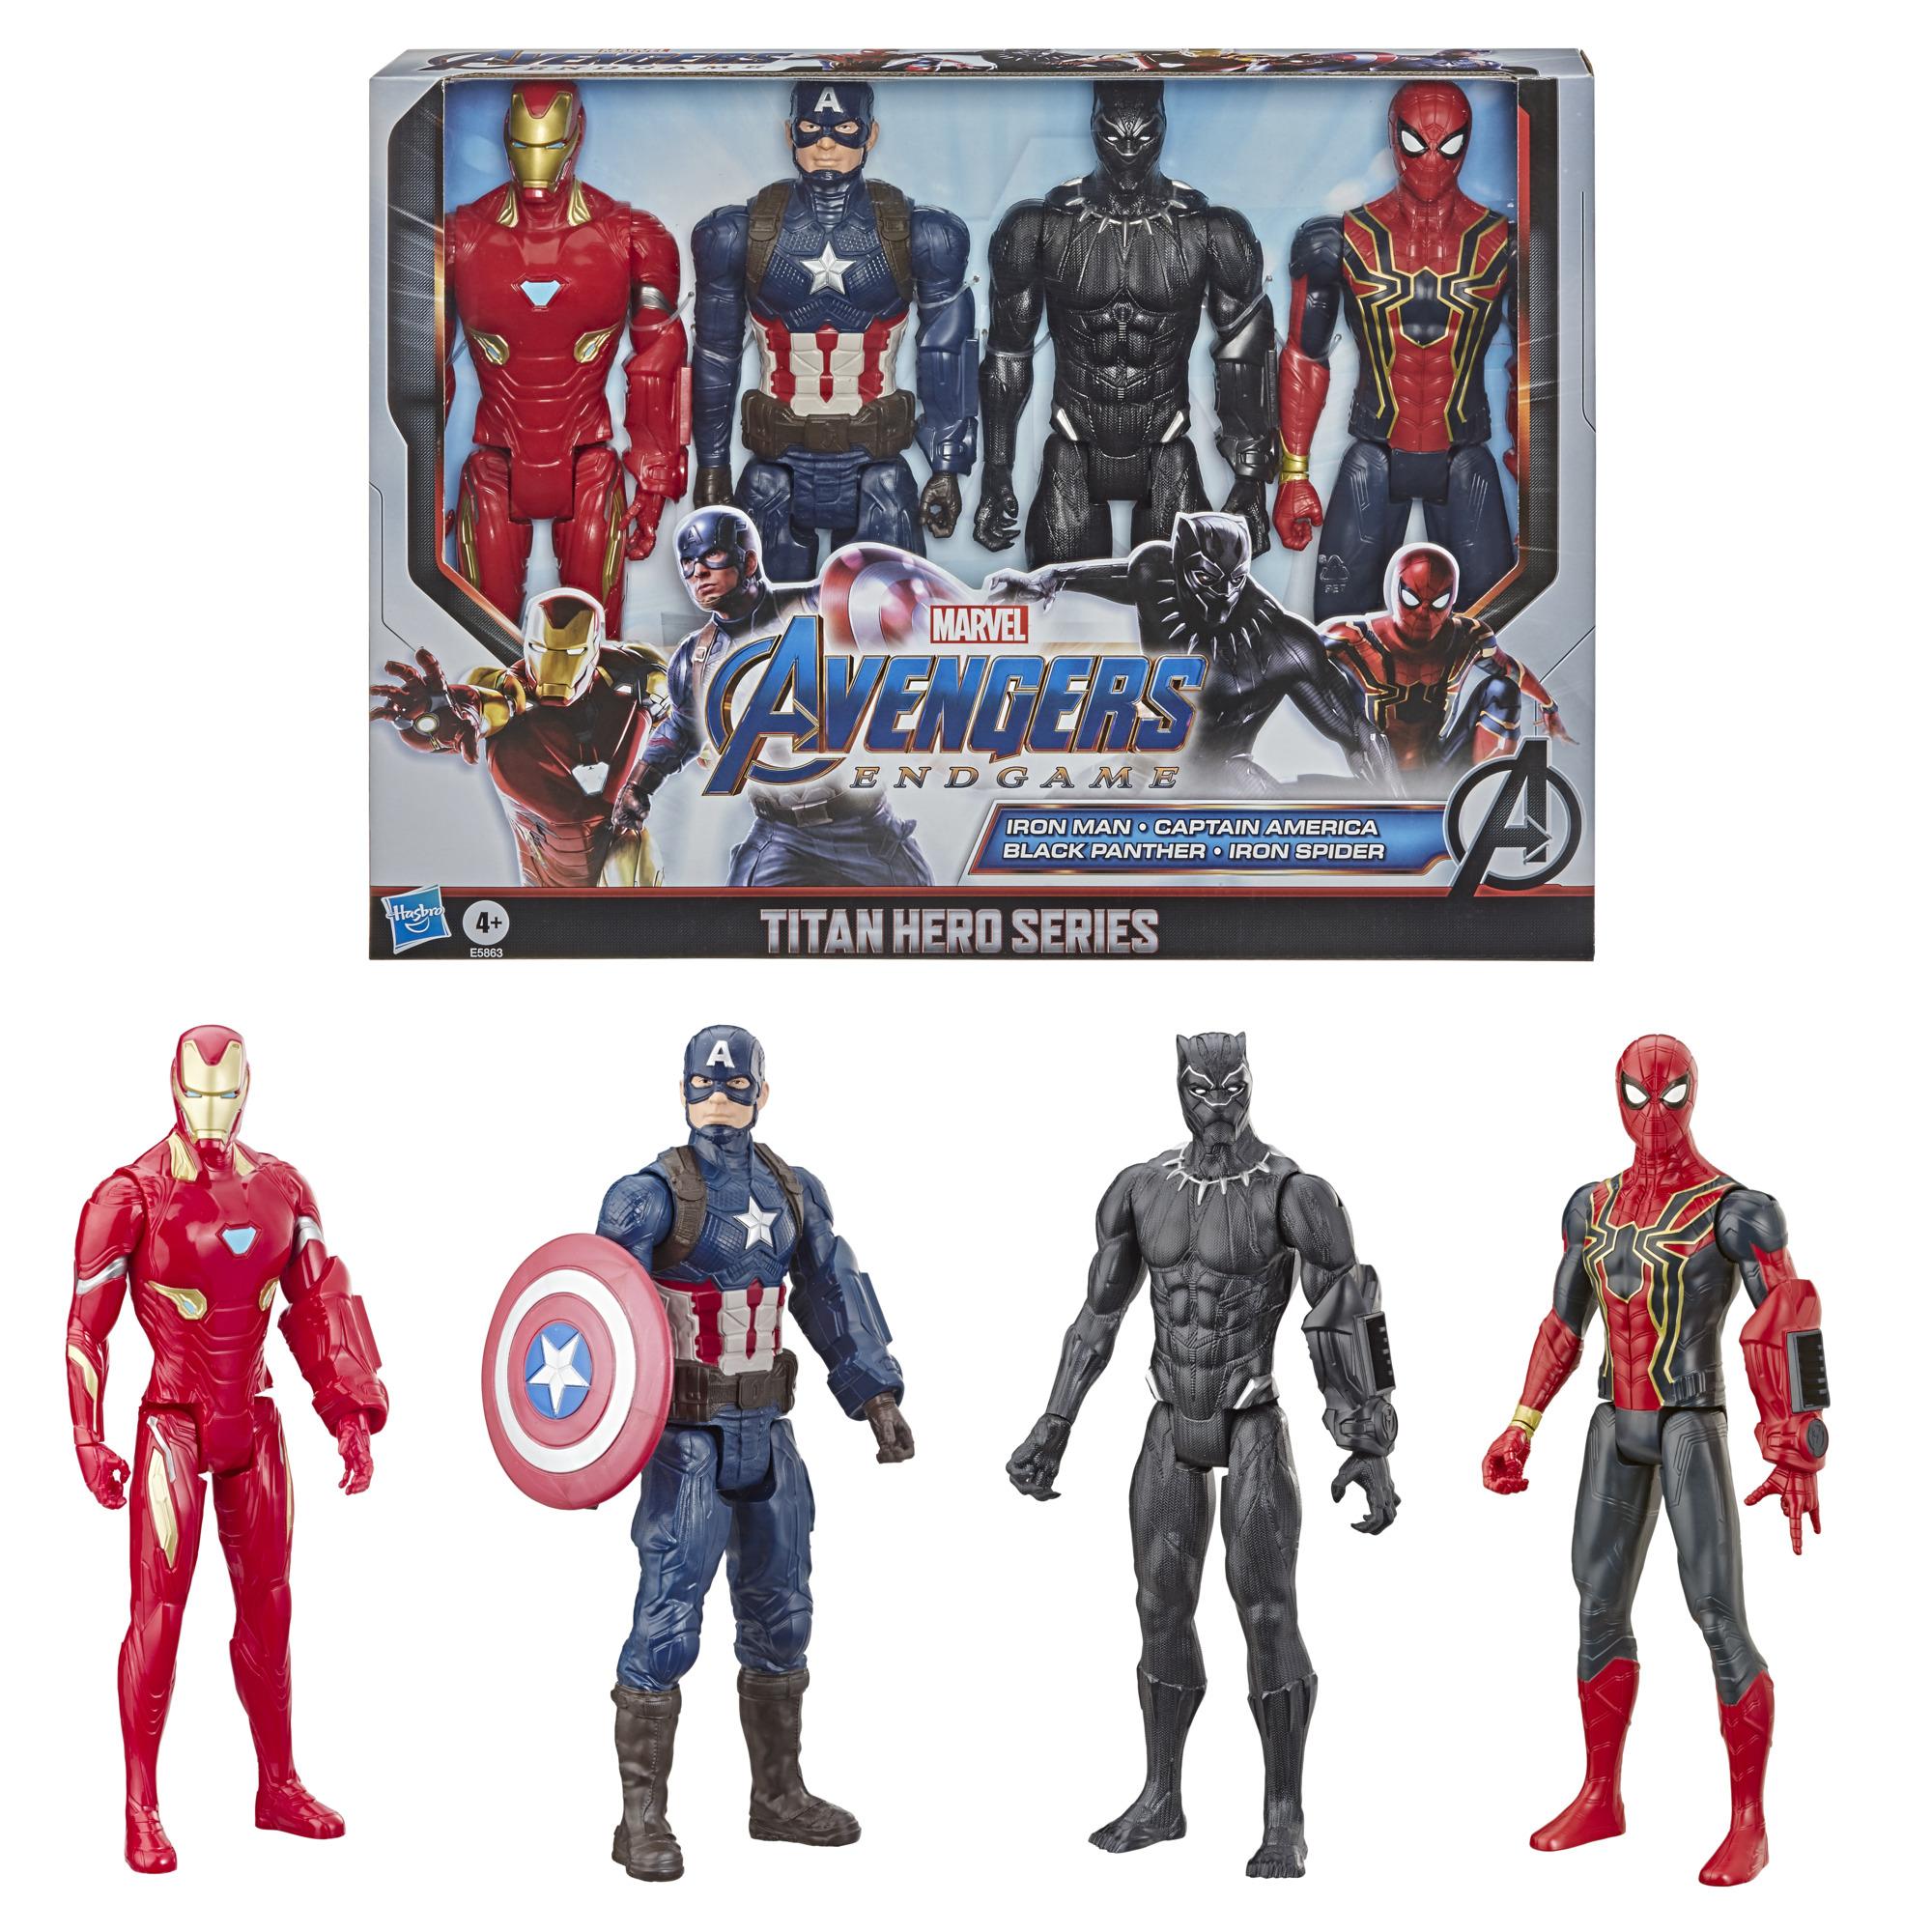 4-Pack Marvel Avengers Endgame Titan Hero Series Action Figures for $20